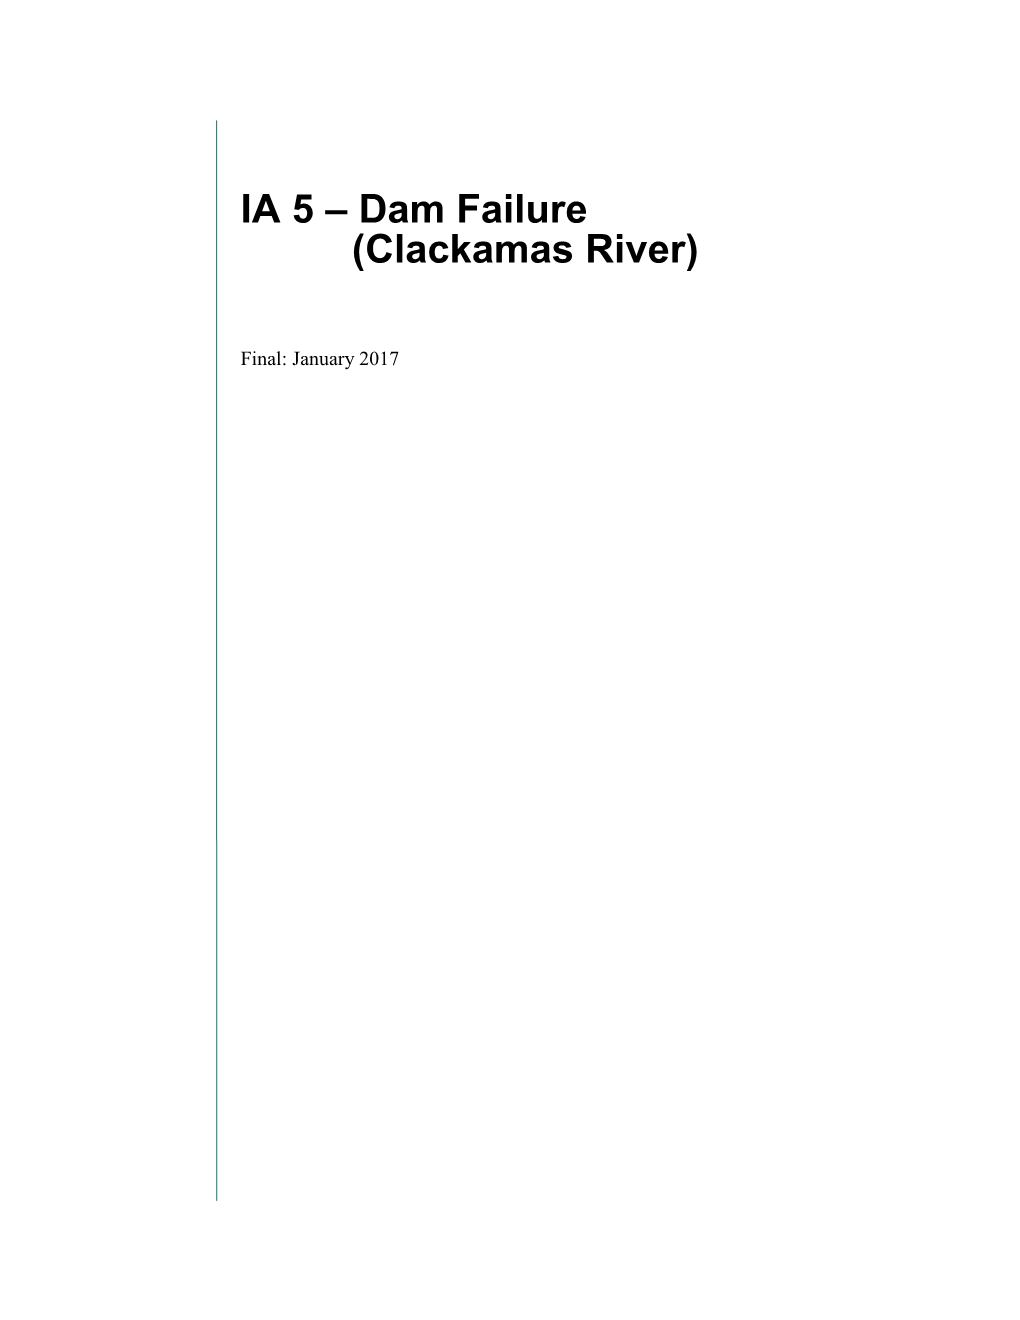 Dam Failure (Clackamas River)